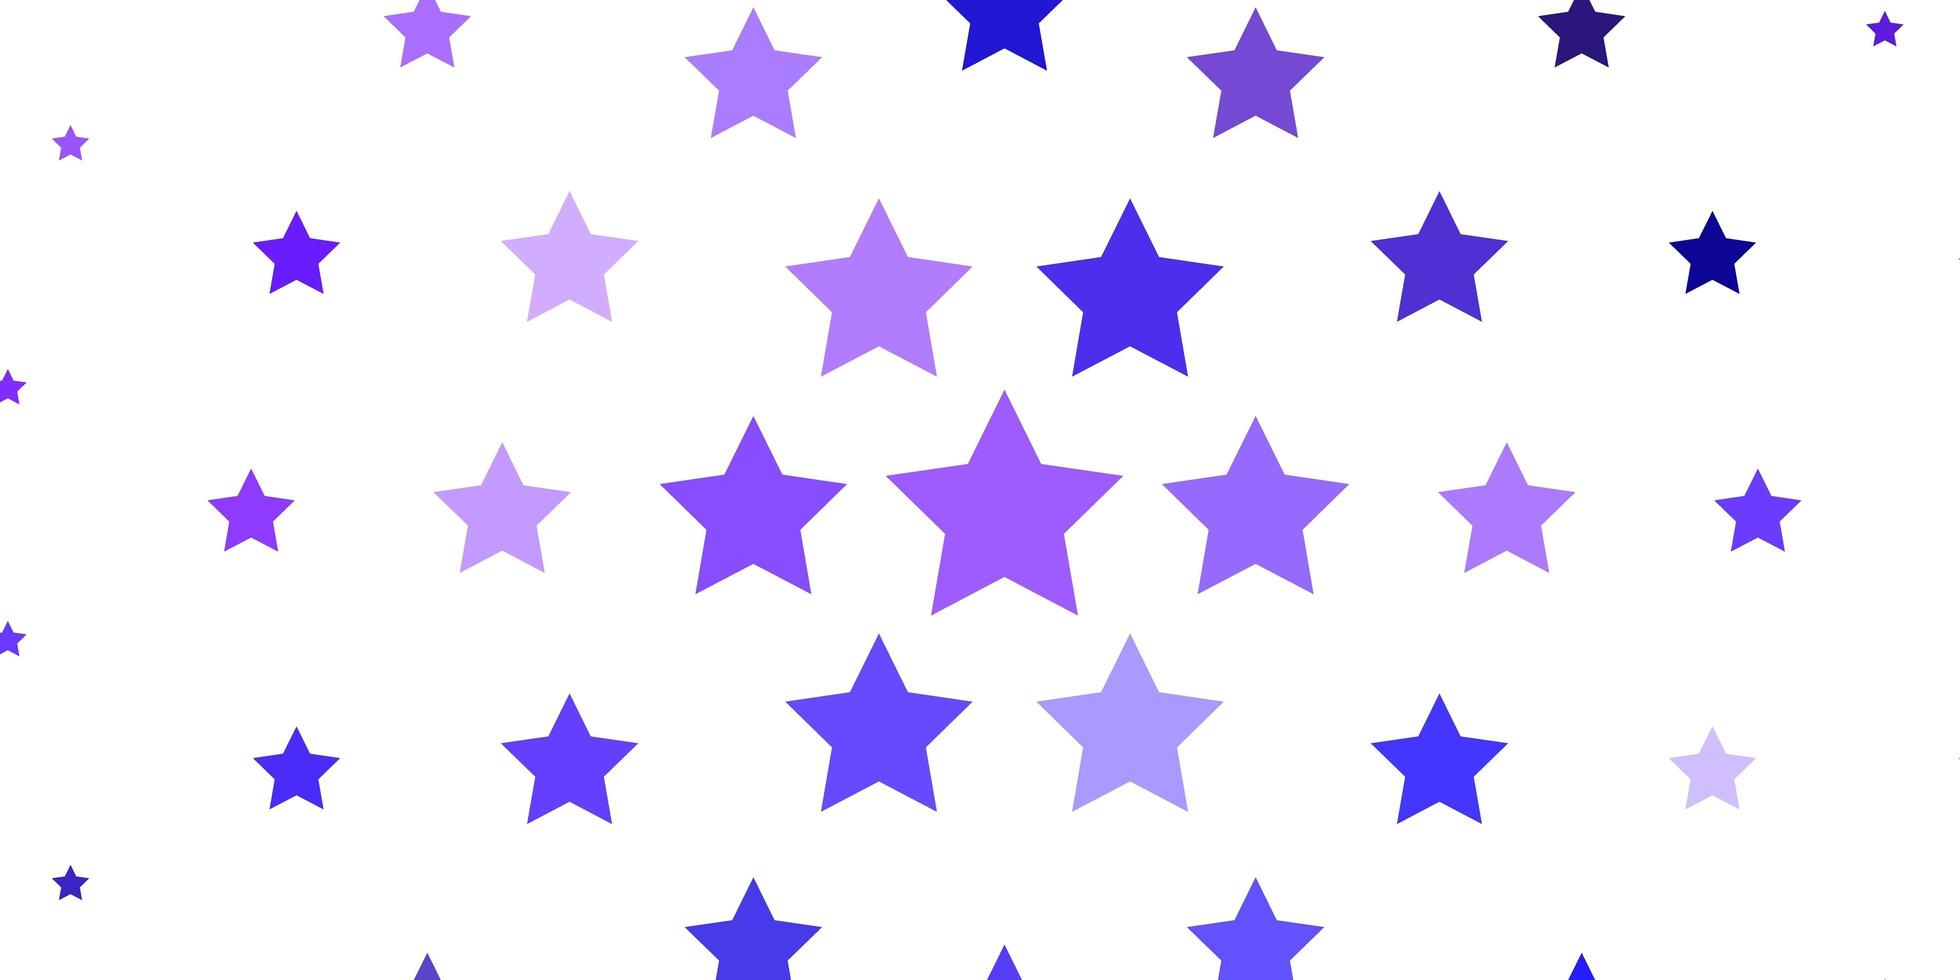 fundo vector roxo claro com estrelas coloridas.